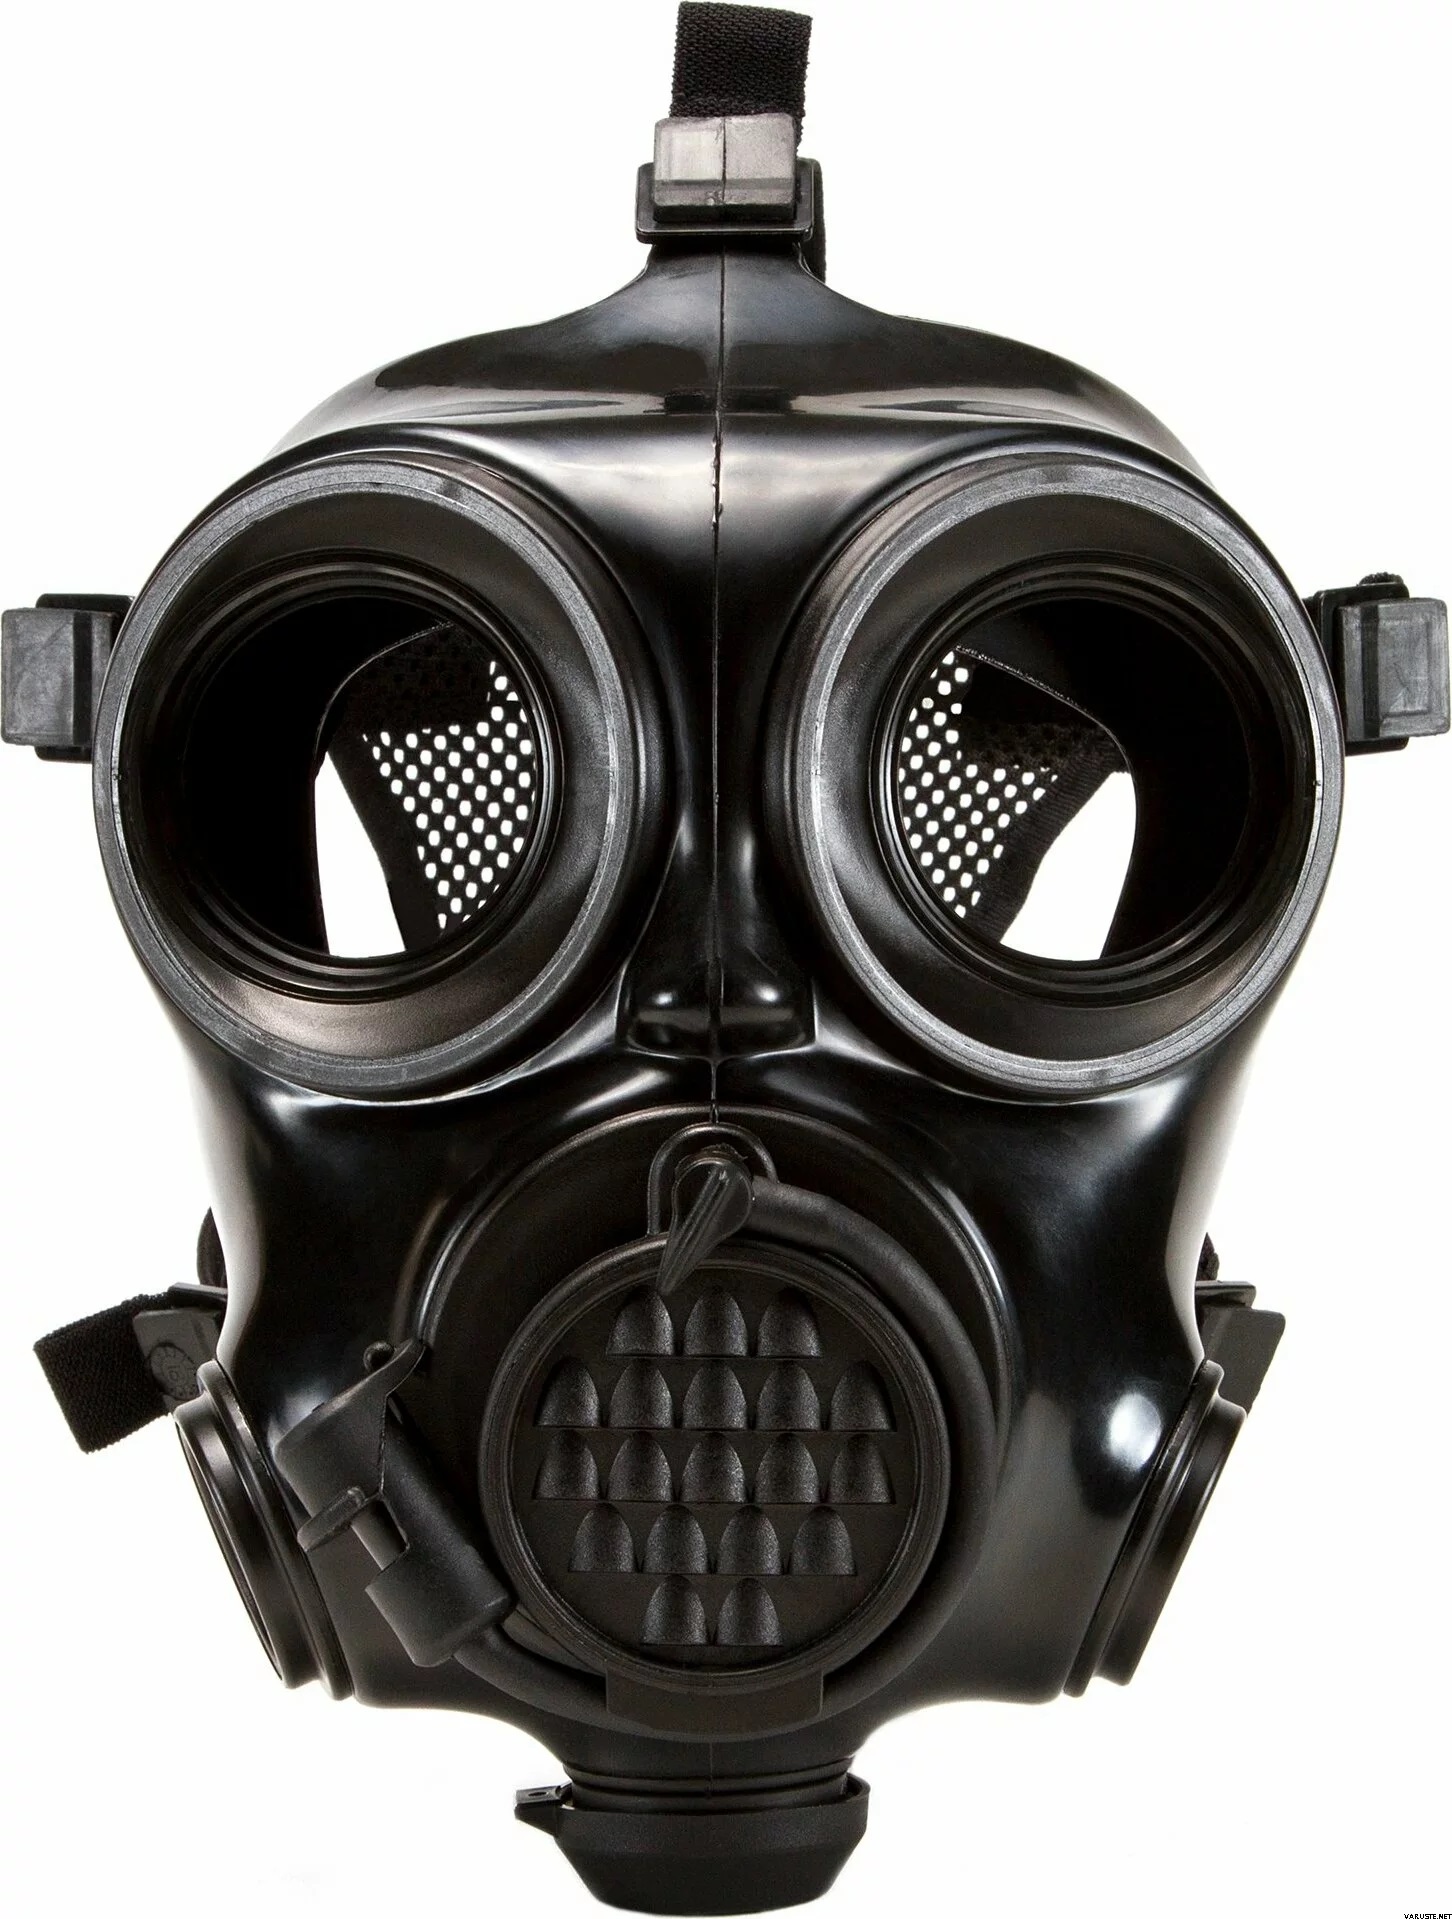 Masque À Gaz En Silicone, Masque De Protection Complet, Résistant